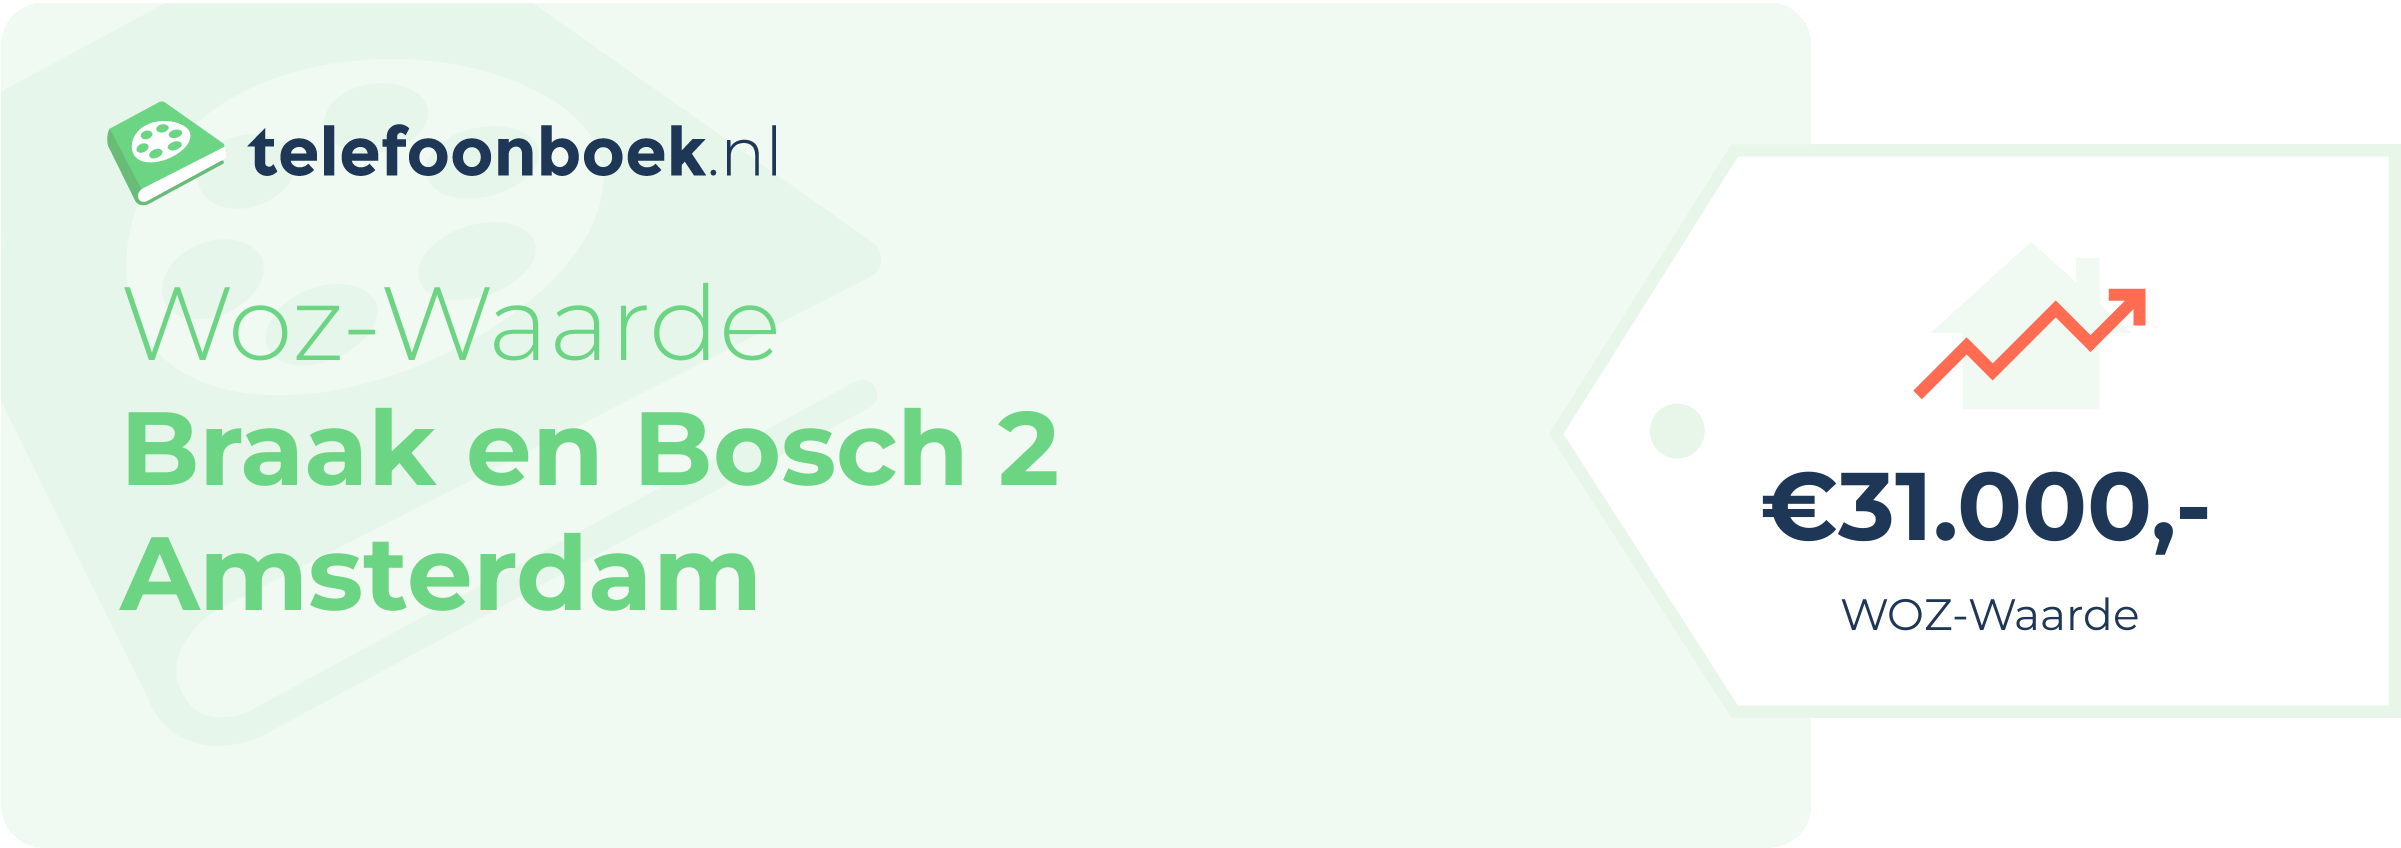 WOZ-waarde Braak En Bosch 2 Amsterdam